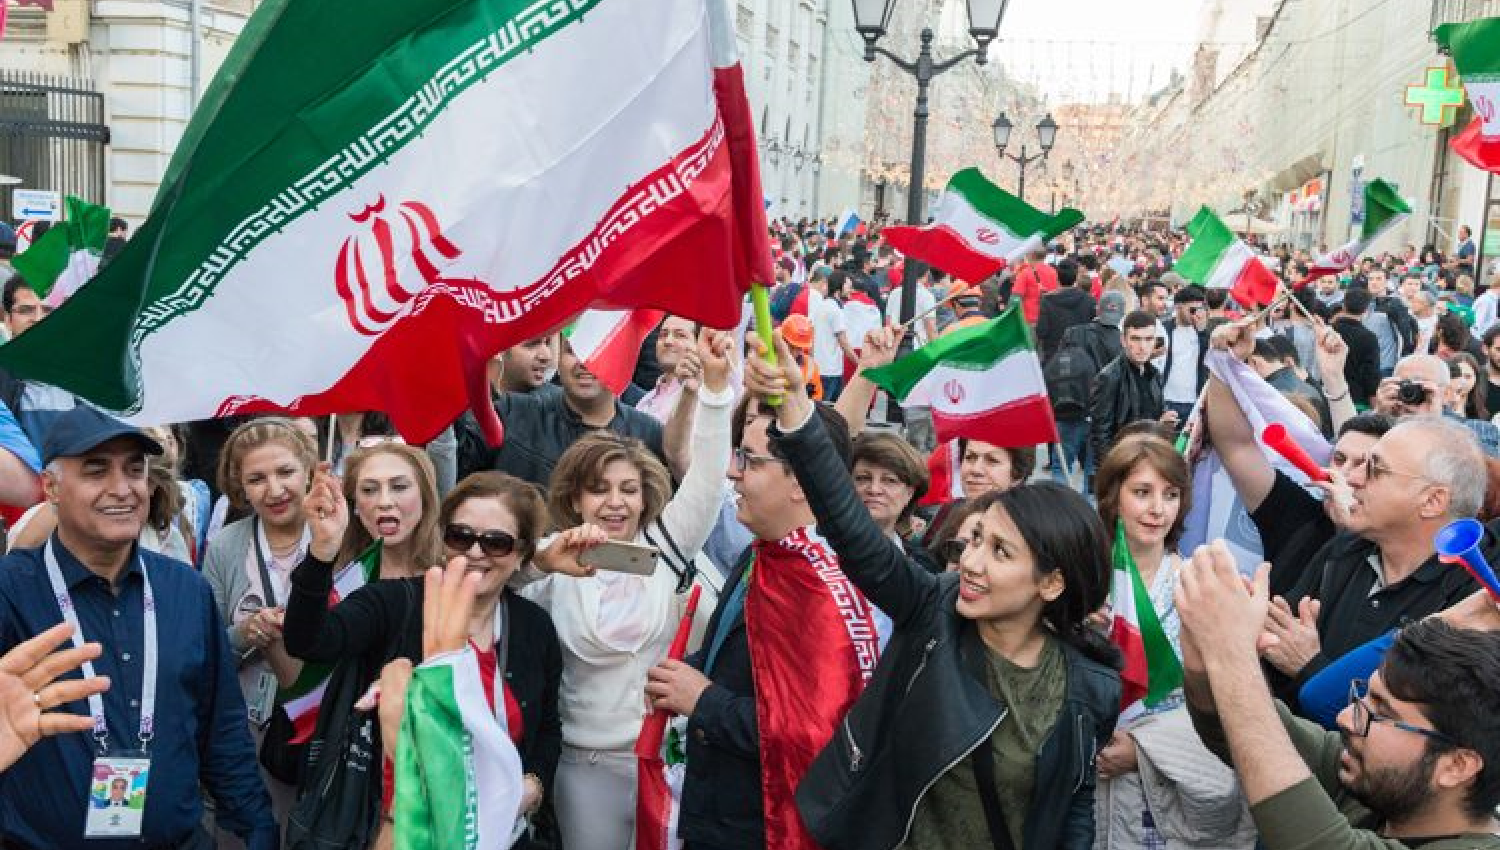  "الثورات النسوية": النسخة الجديدة لـ "الربيع العربي"